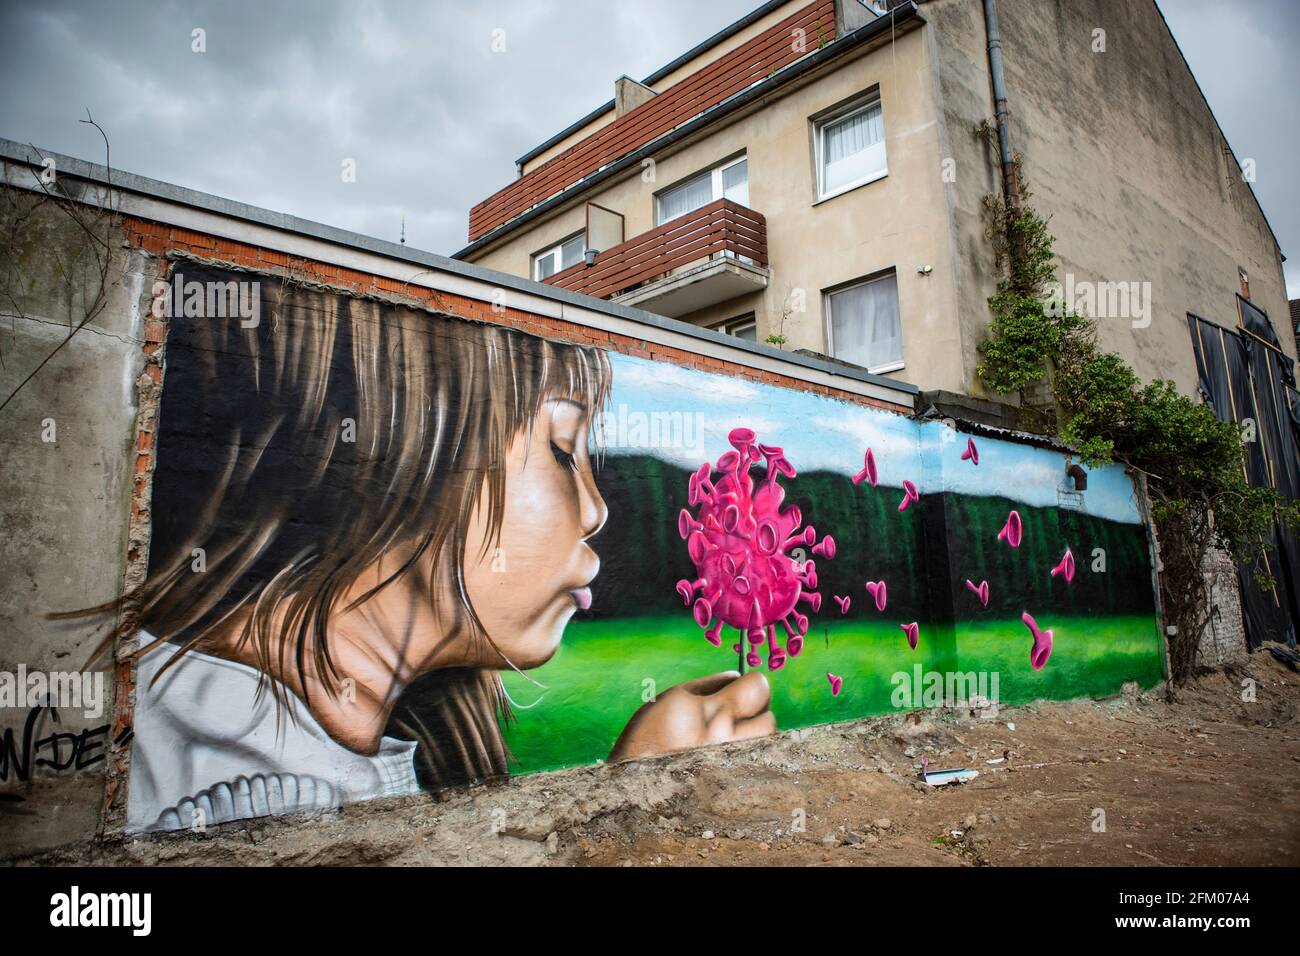 Ein Graffiti an einer alten Mauer zeigt ein Mädchen, welches wie bei einer Pusteblume ein Coronavirus anpustet, welches dann auseinander fliegt. Ein s Stockfoto